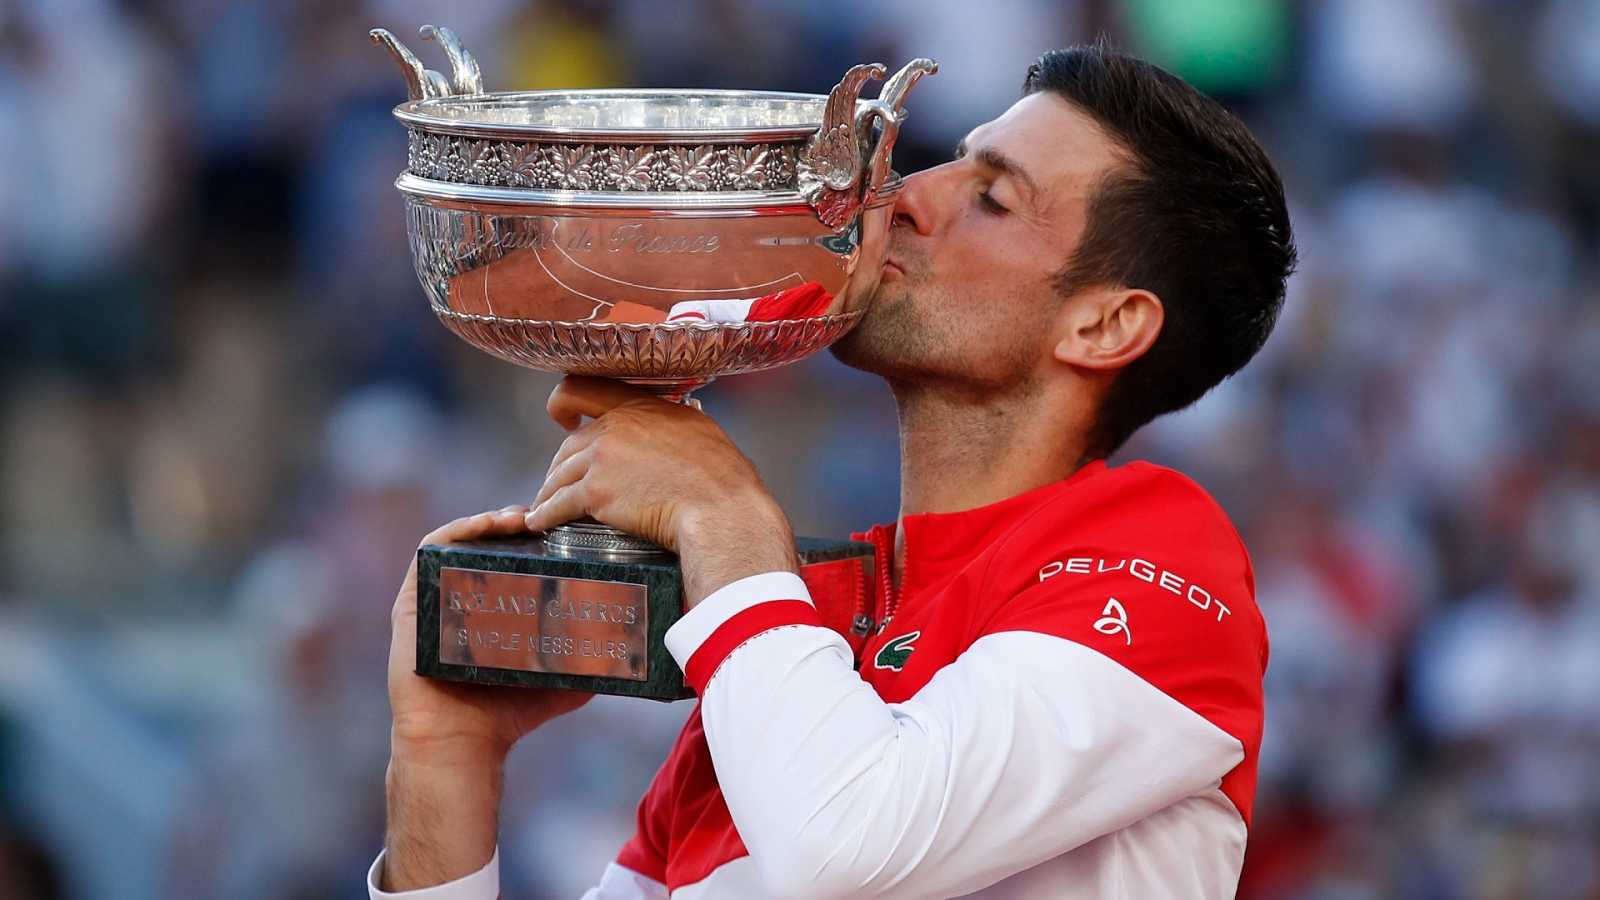 Imagen de la noticia: Tenis: Djokovic conquista Roland Garros, su 19º Grand Slam, tras ganar a Tsitsipas en la final